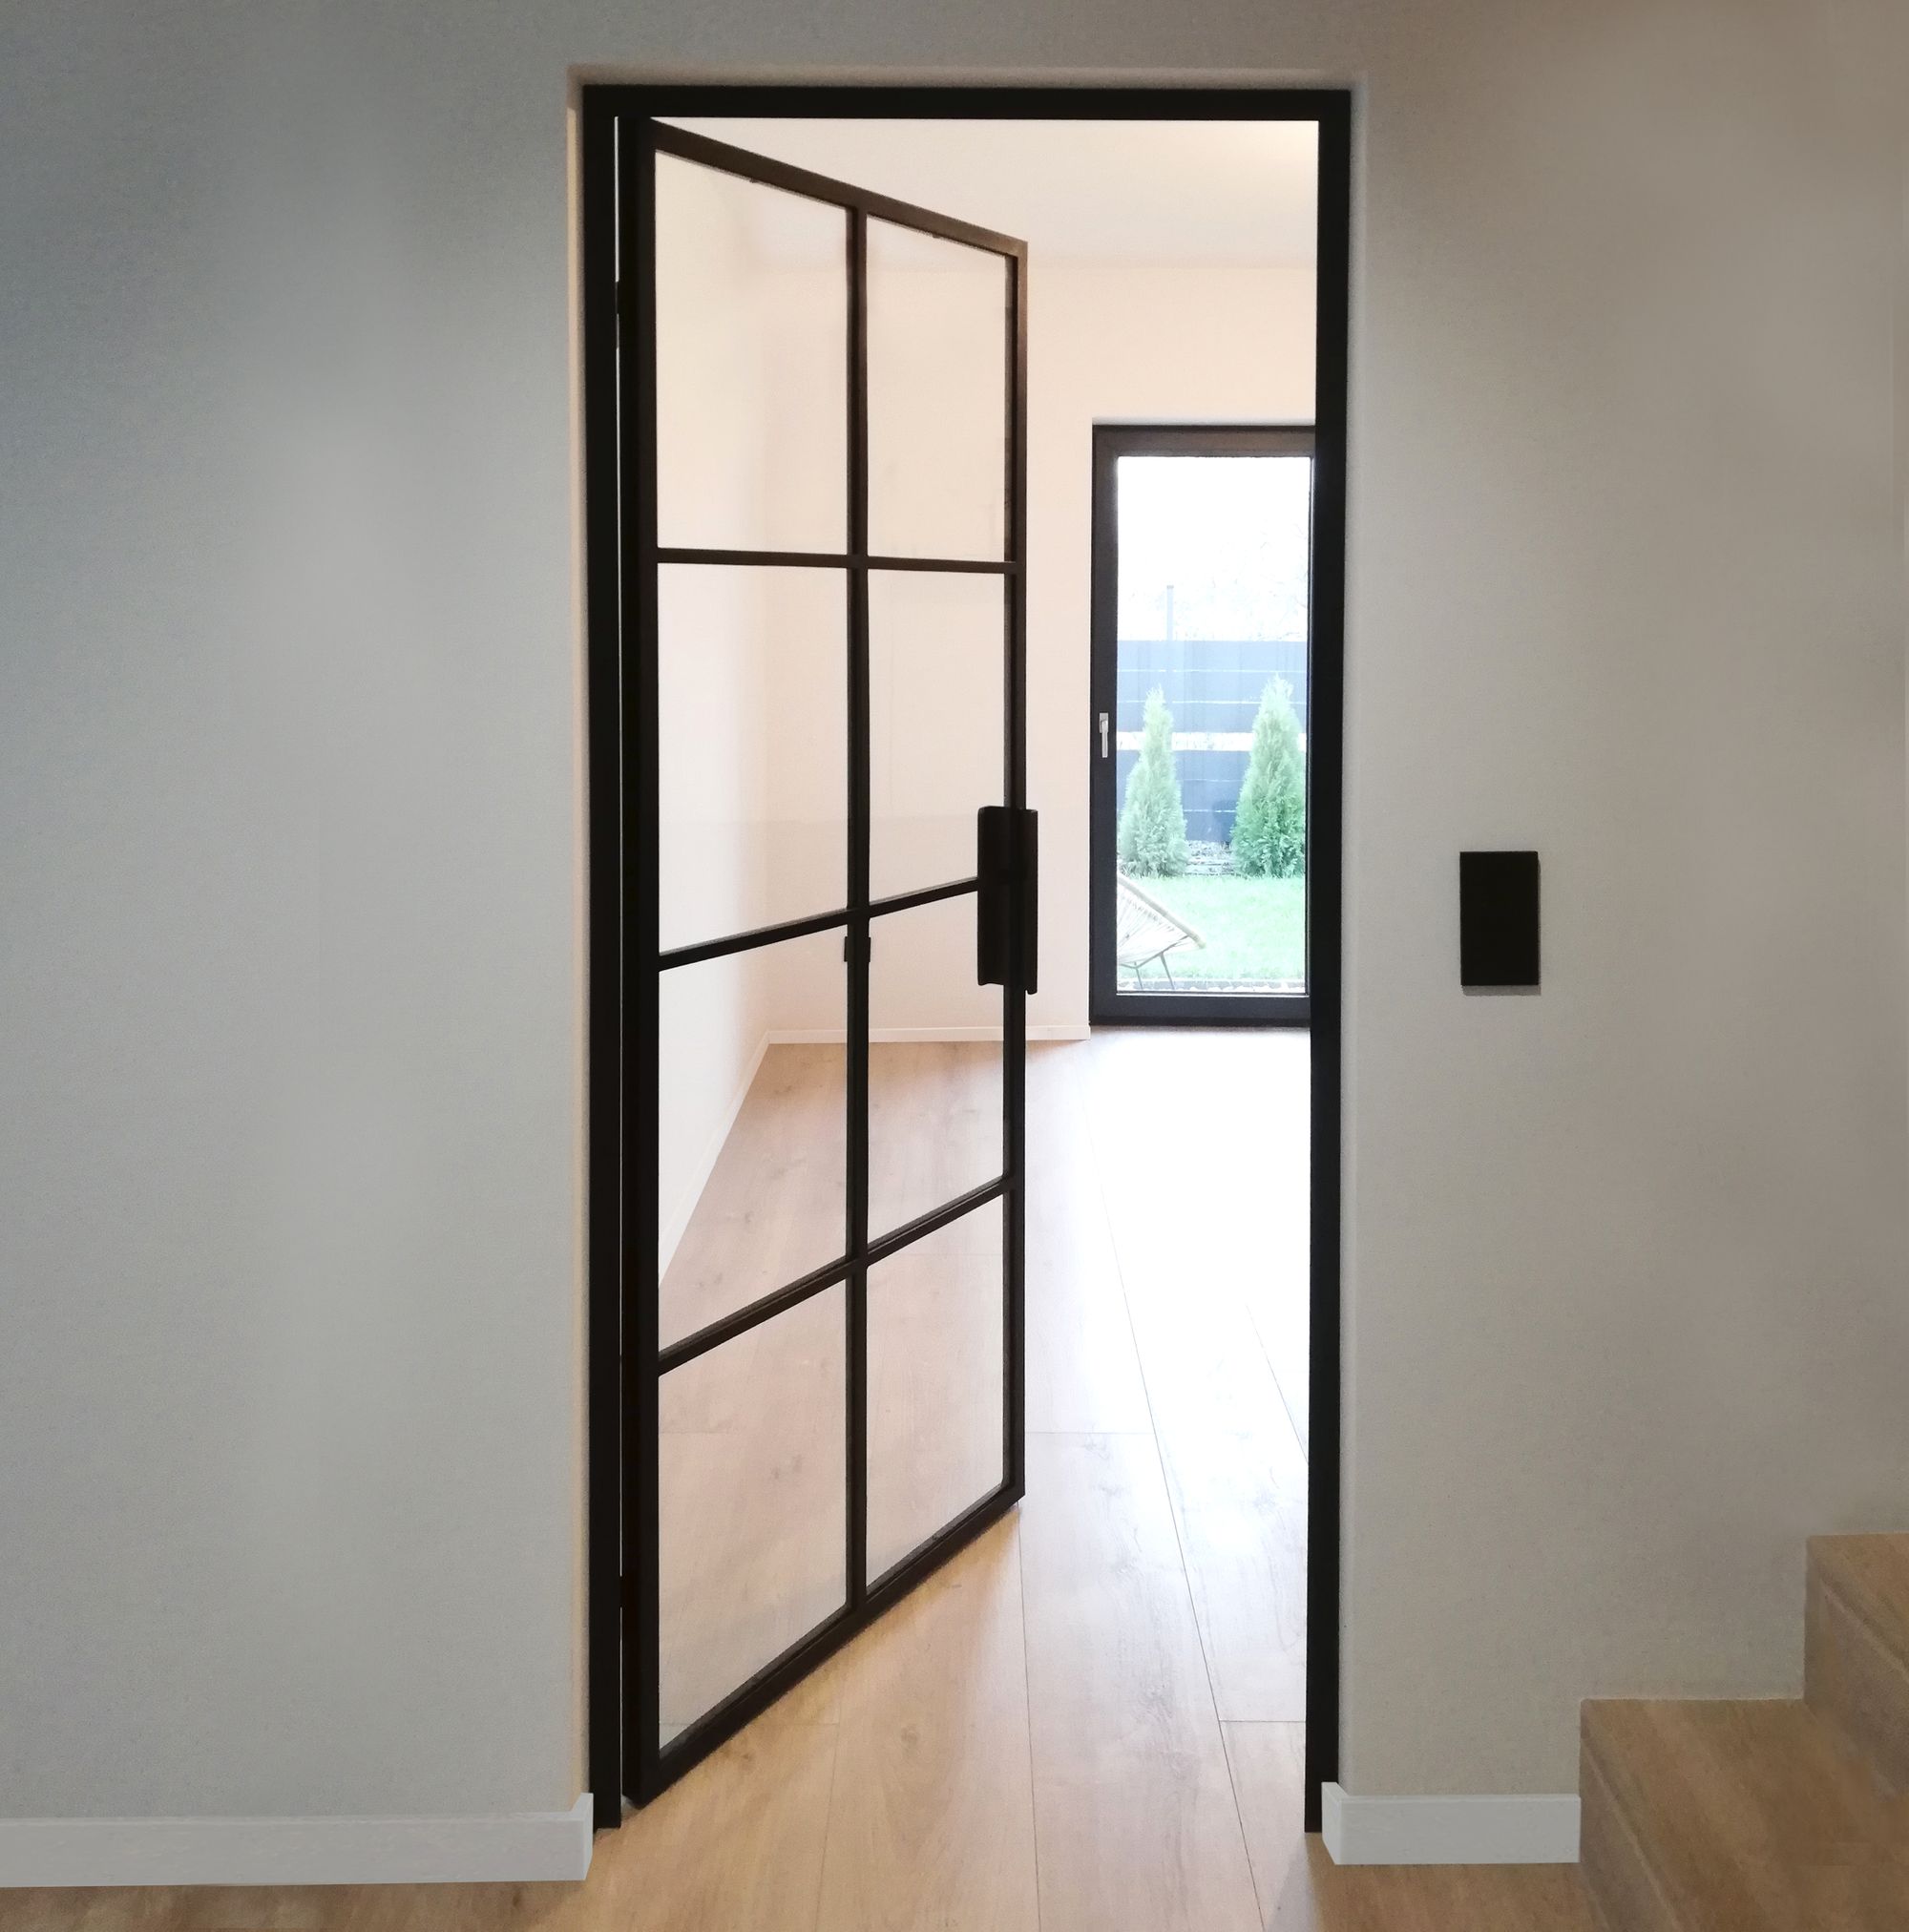 Loft doors - industrial slim type